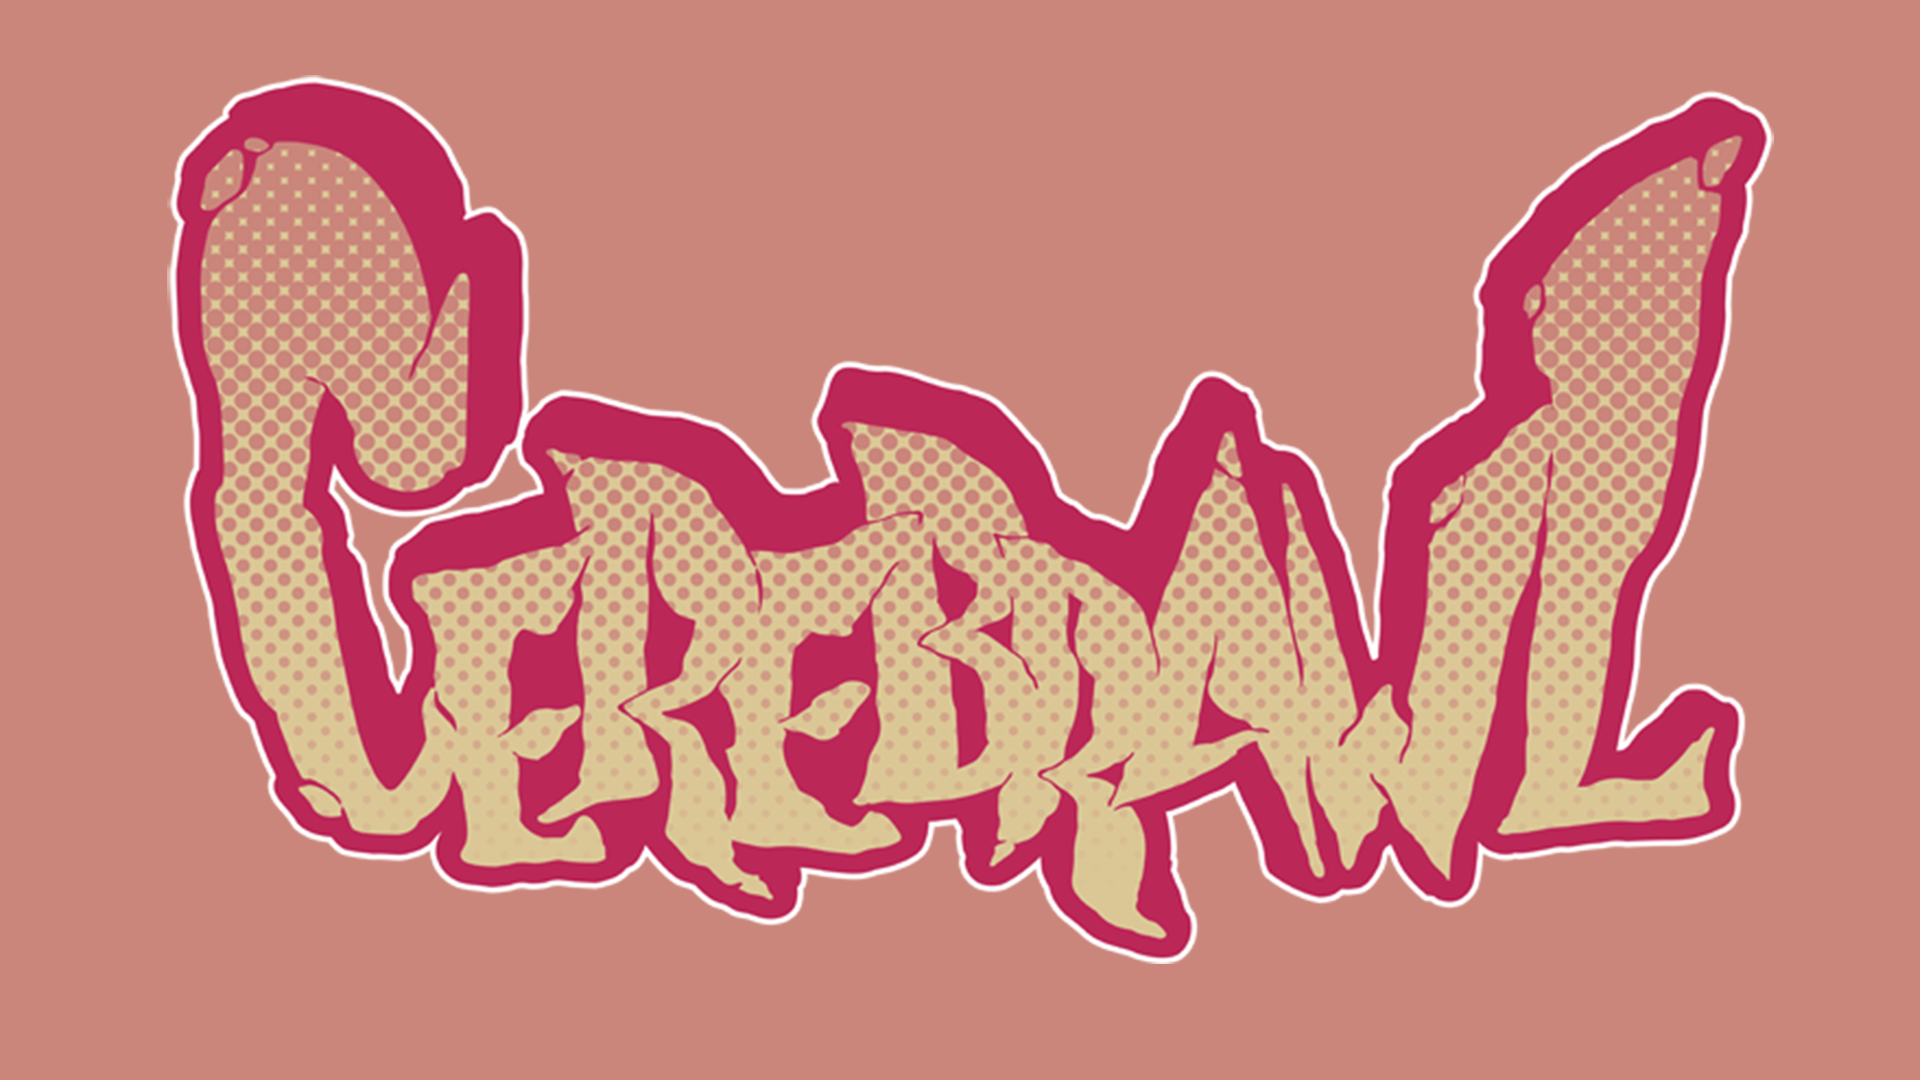 Cerebrawl Logo